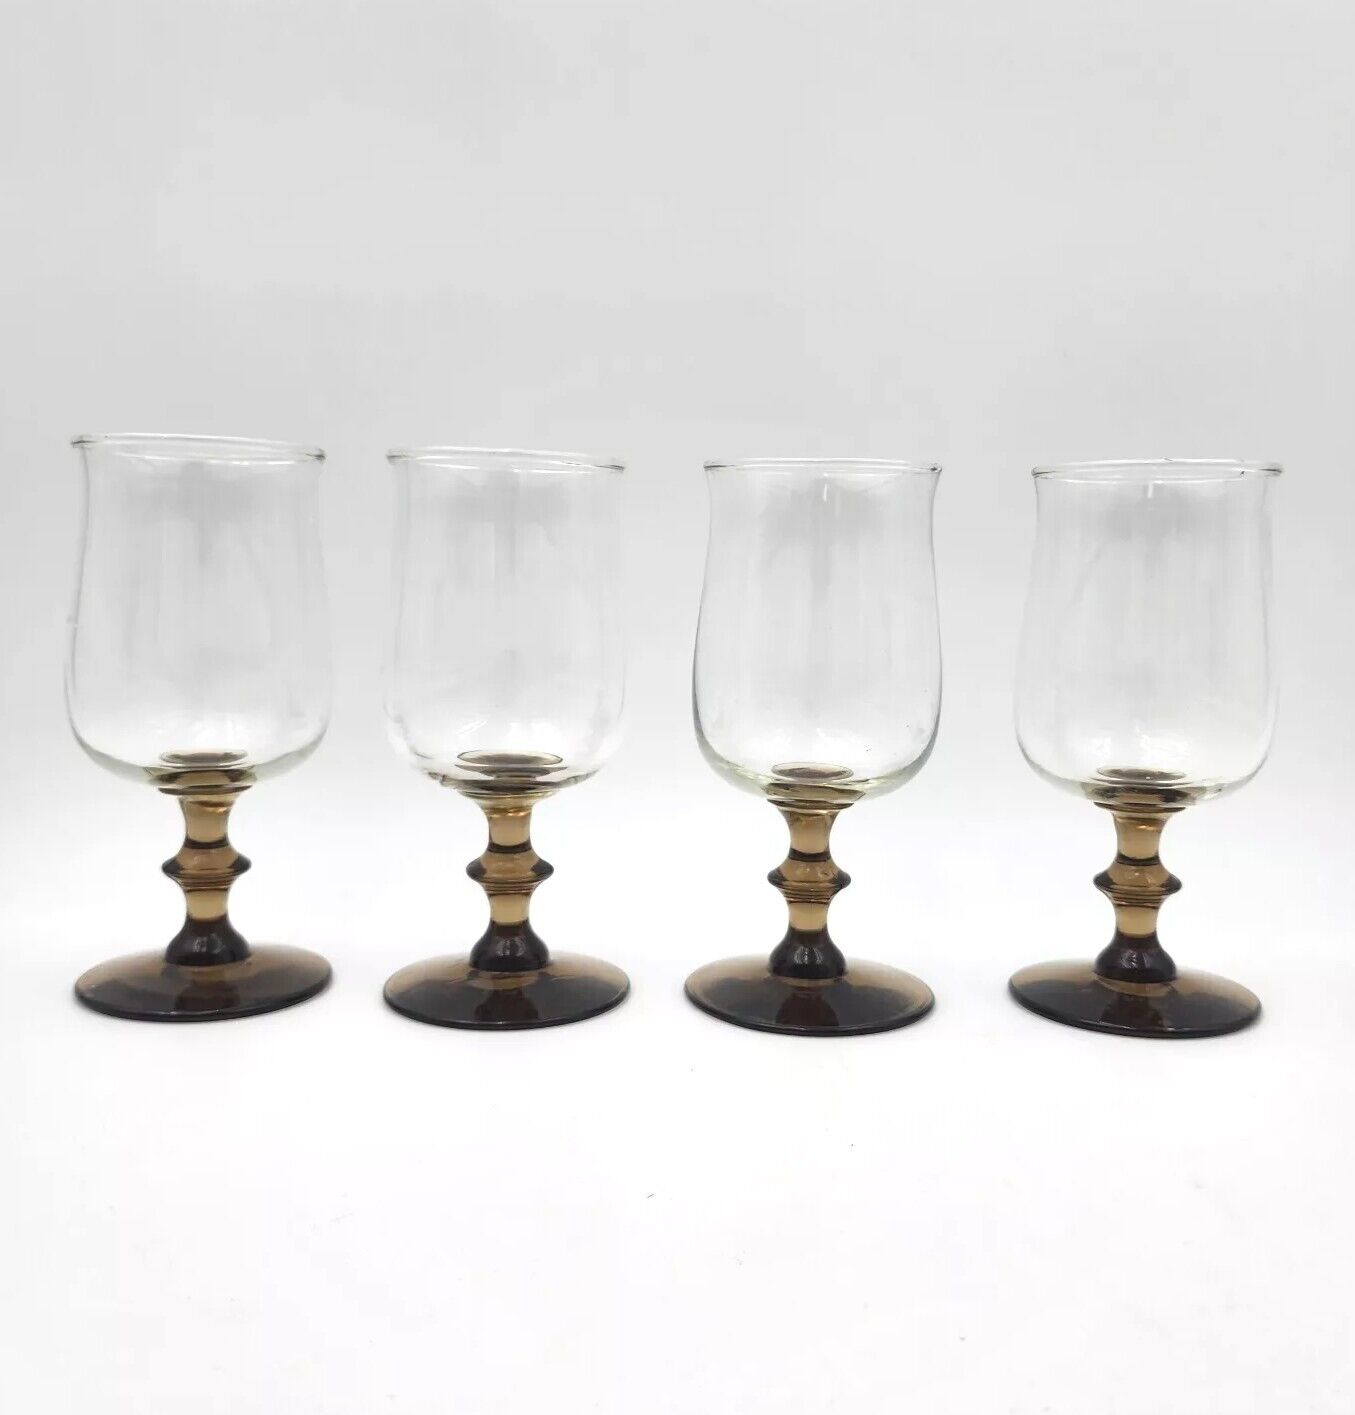 Vintage Libby Tulip Wine Glasses Goblets Brown Wafer Stem Set of 4